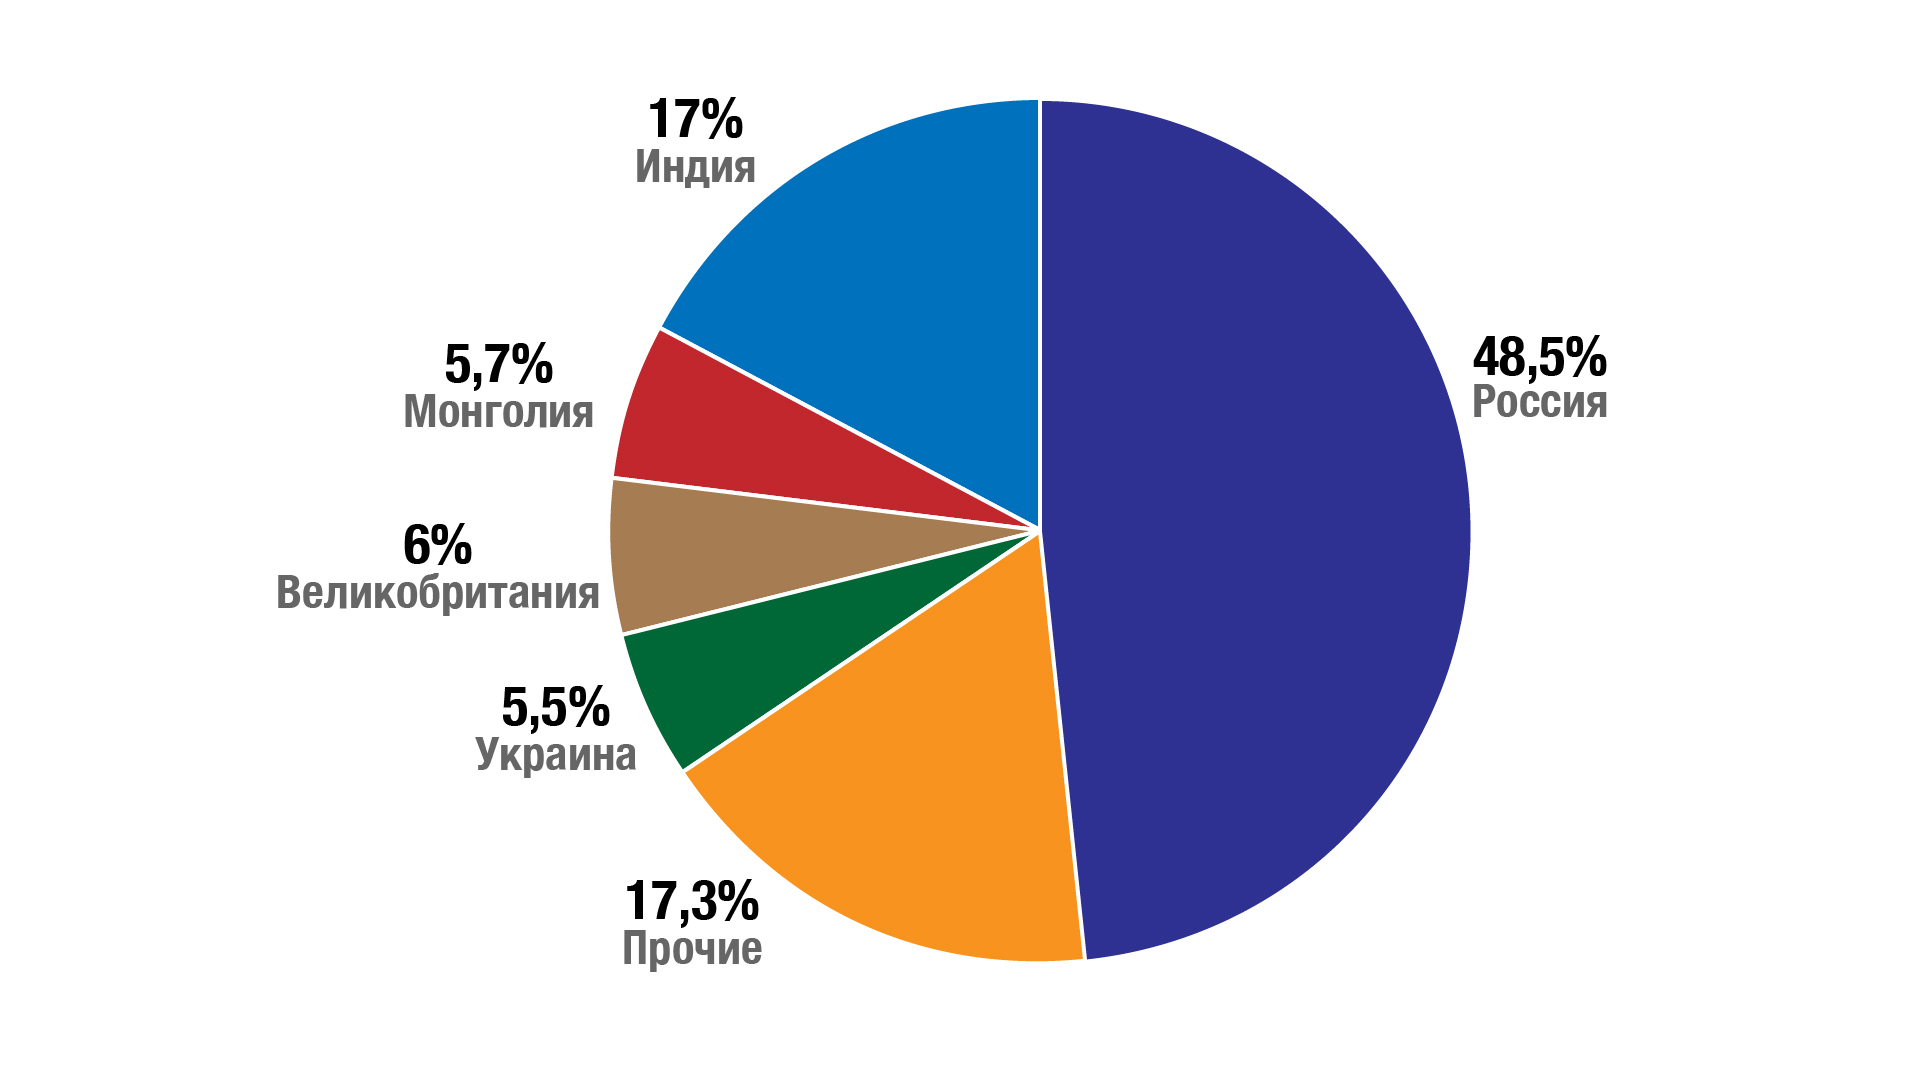 Крупнейшим партнером "БелАЗ" остается Россия